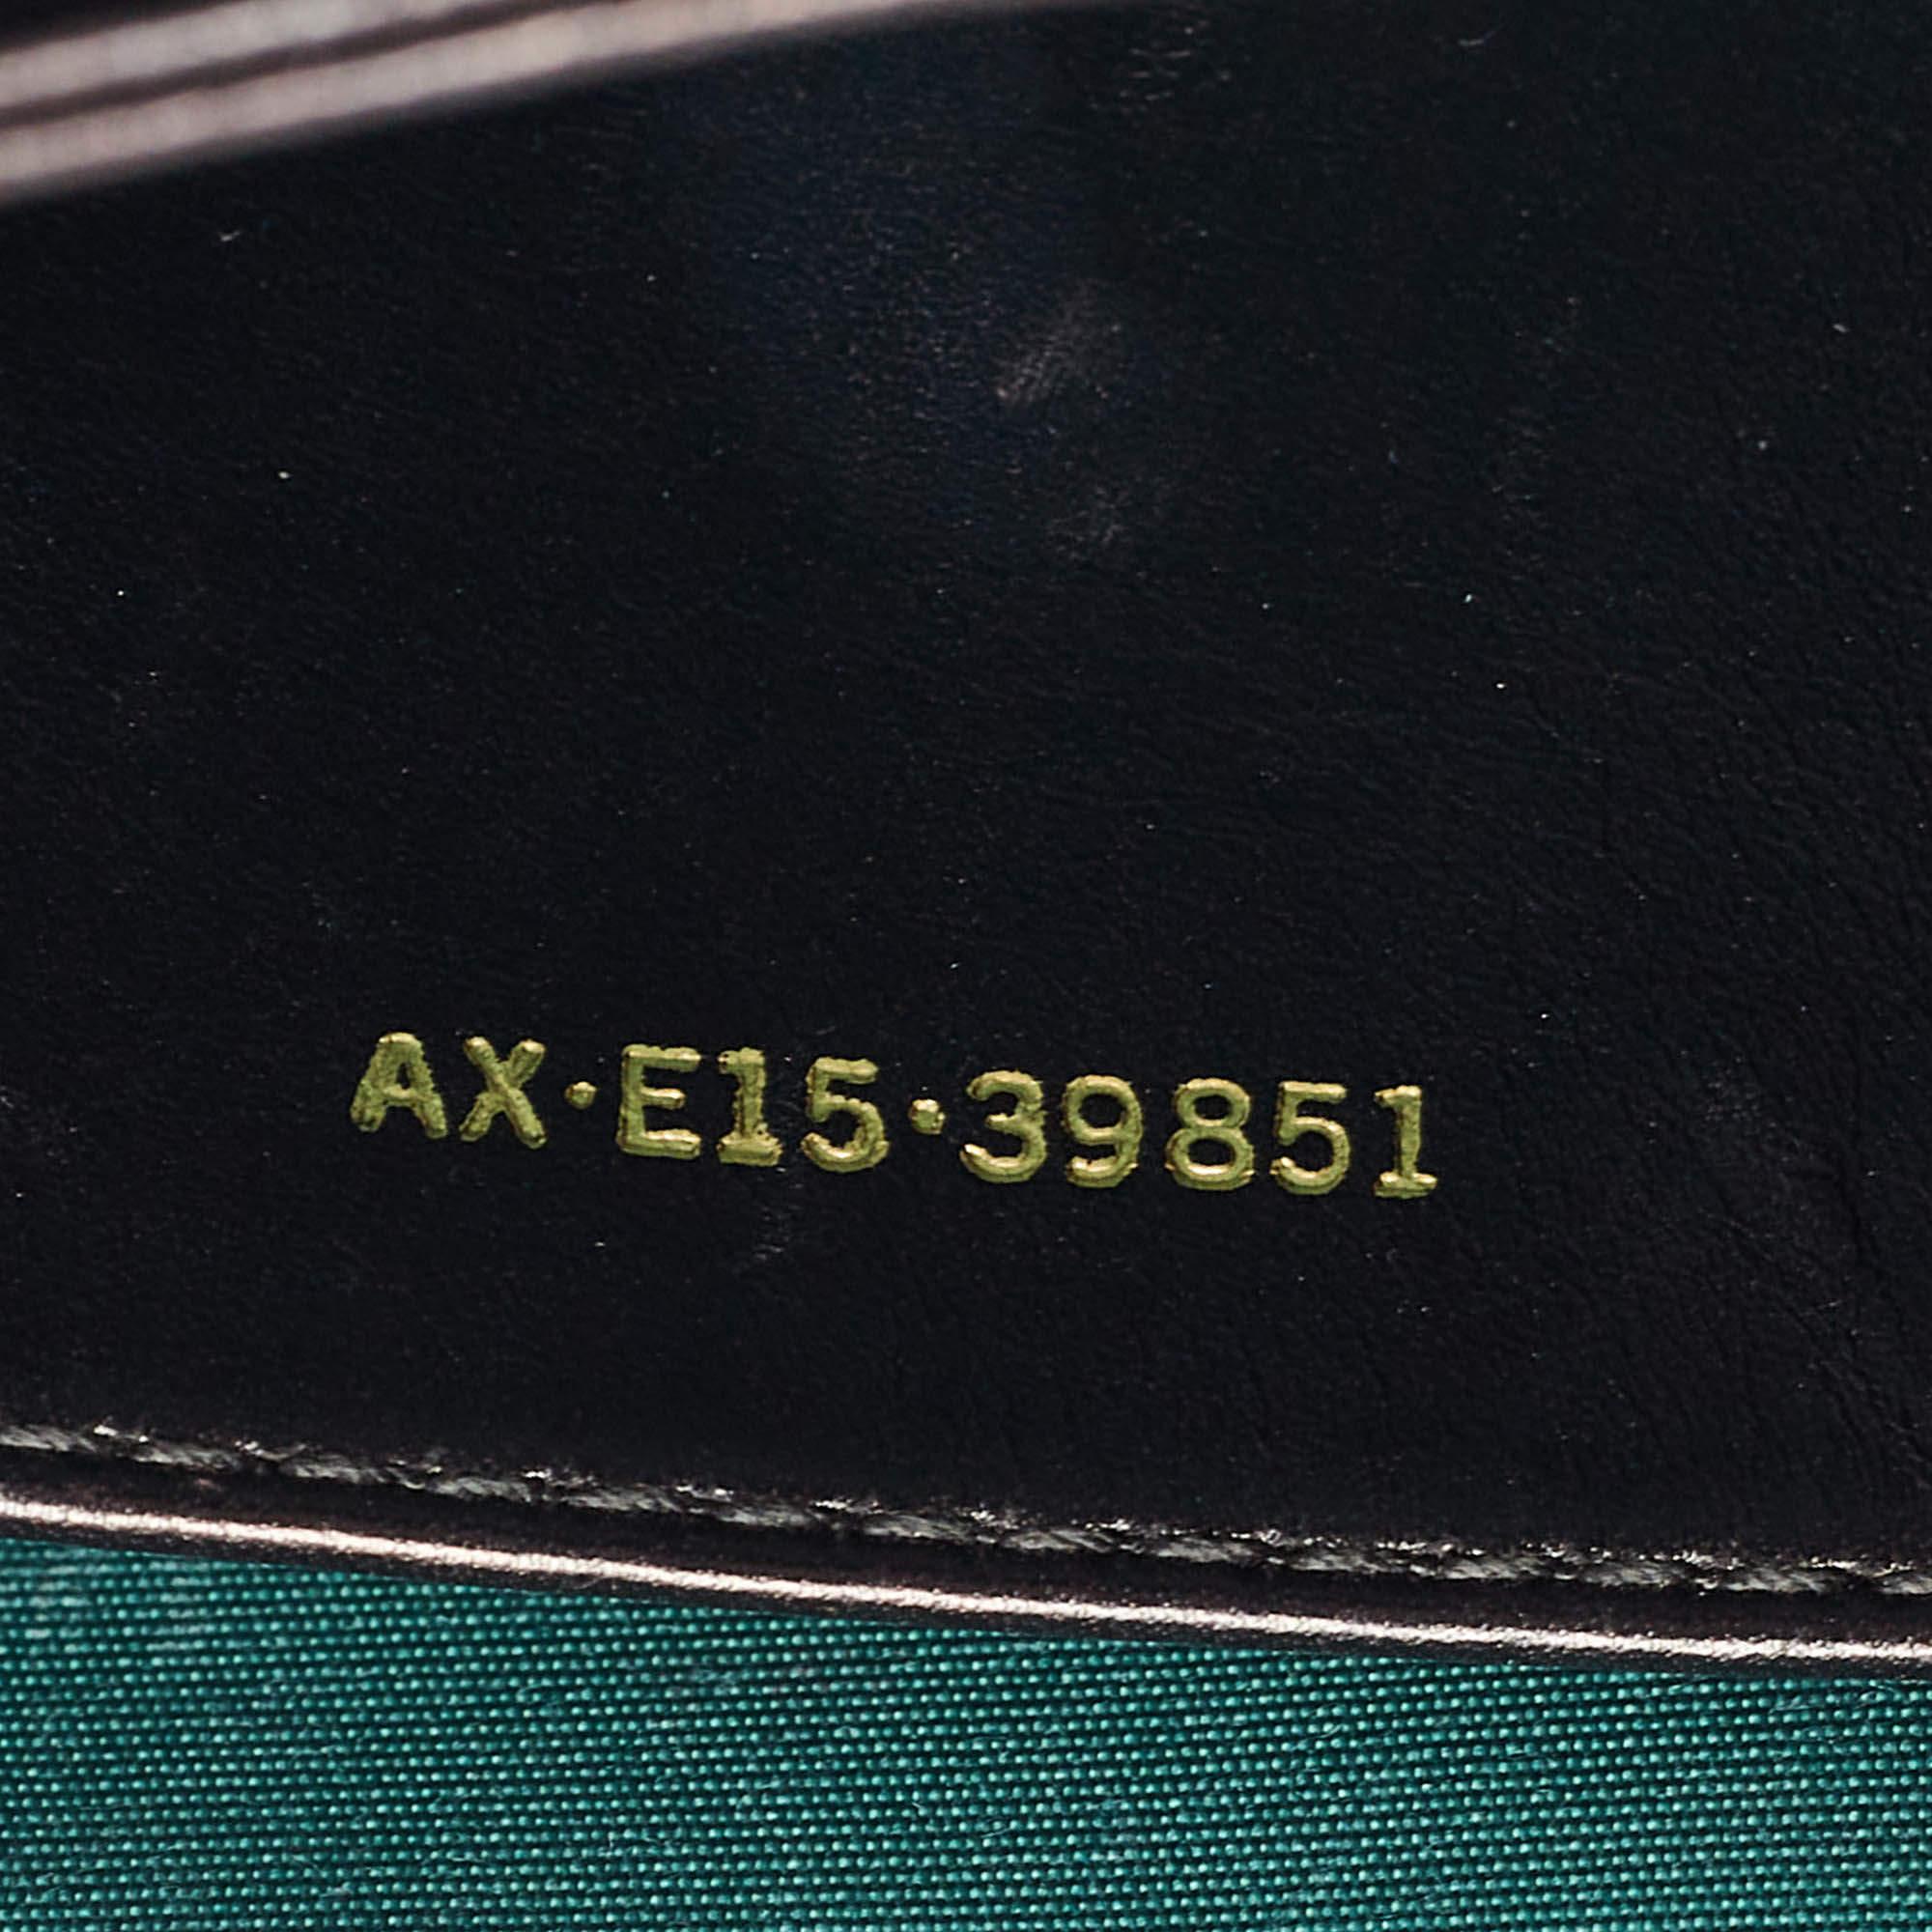 Bvlgari Black Leather and Perspex Flap Cover Shoulder Bag 14